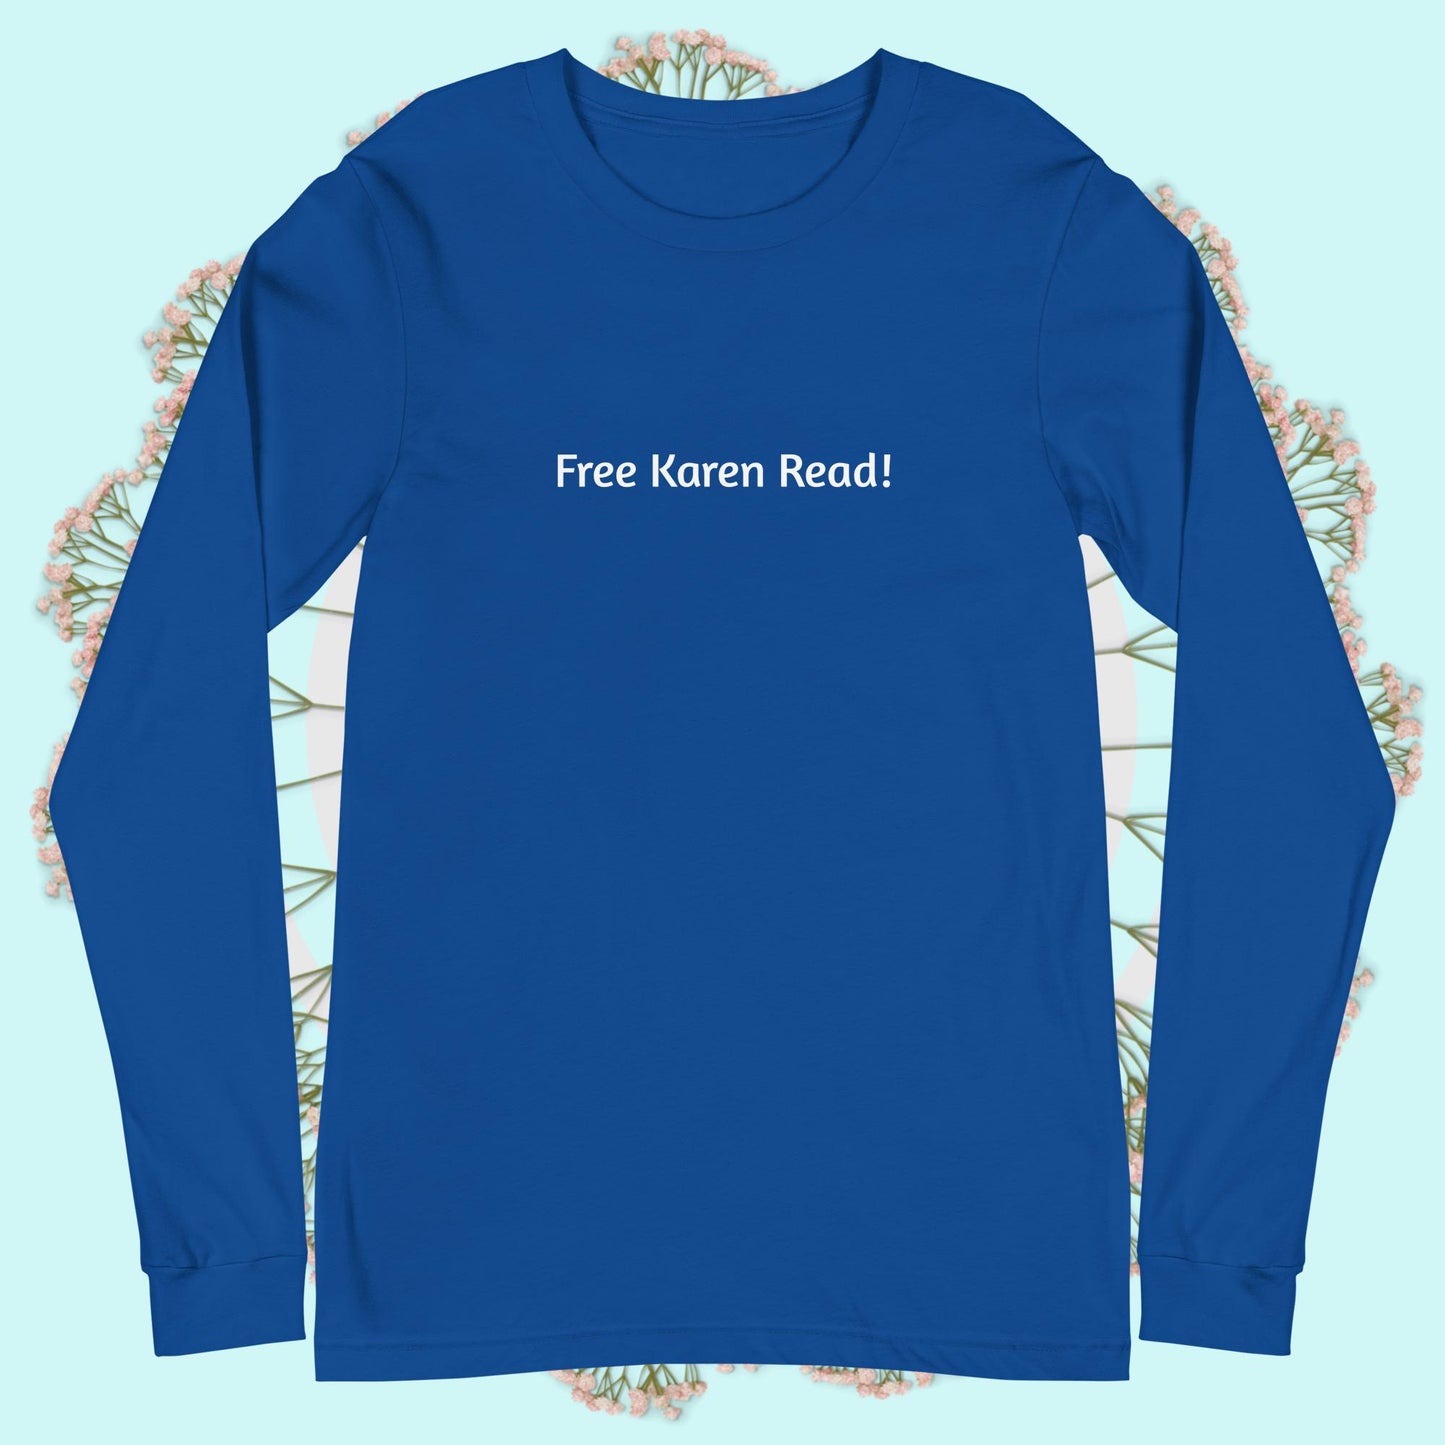 Free Karen Read! Unisex Long Sleeve Tee